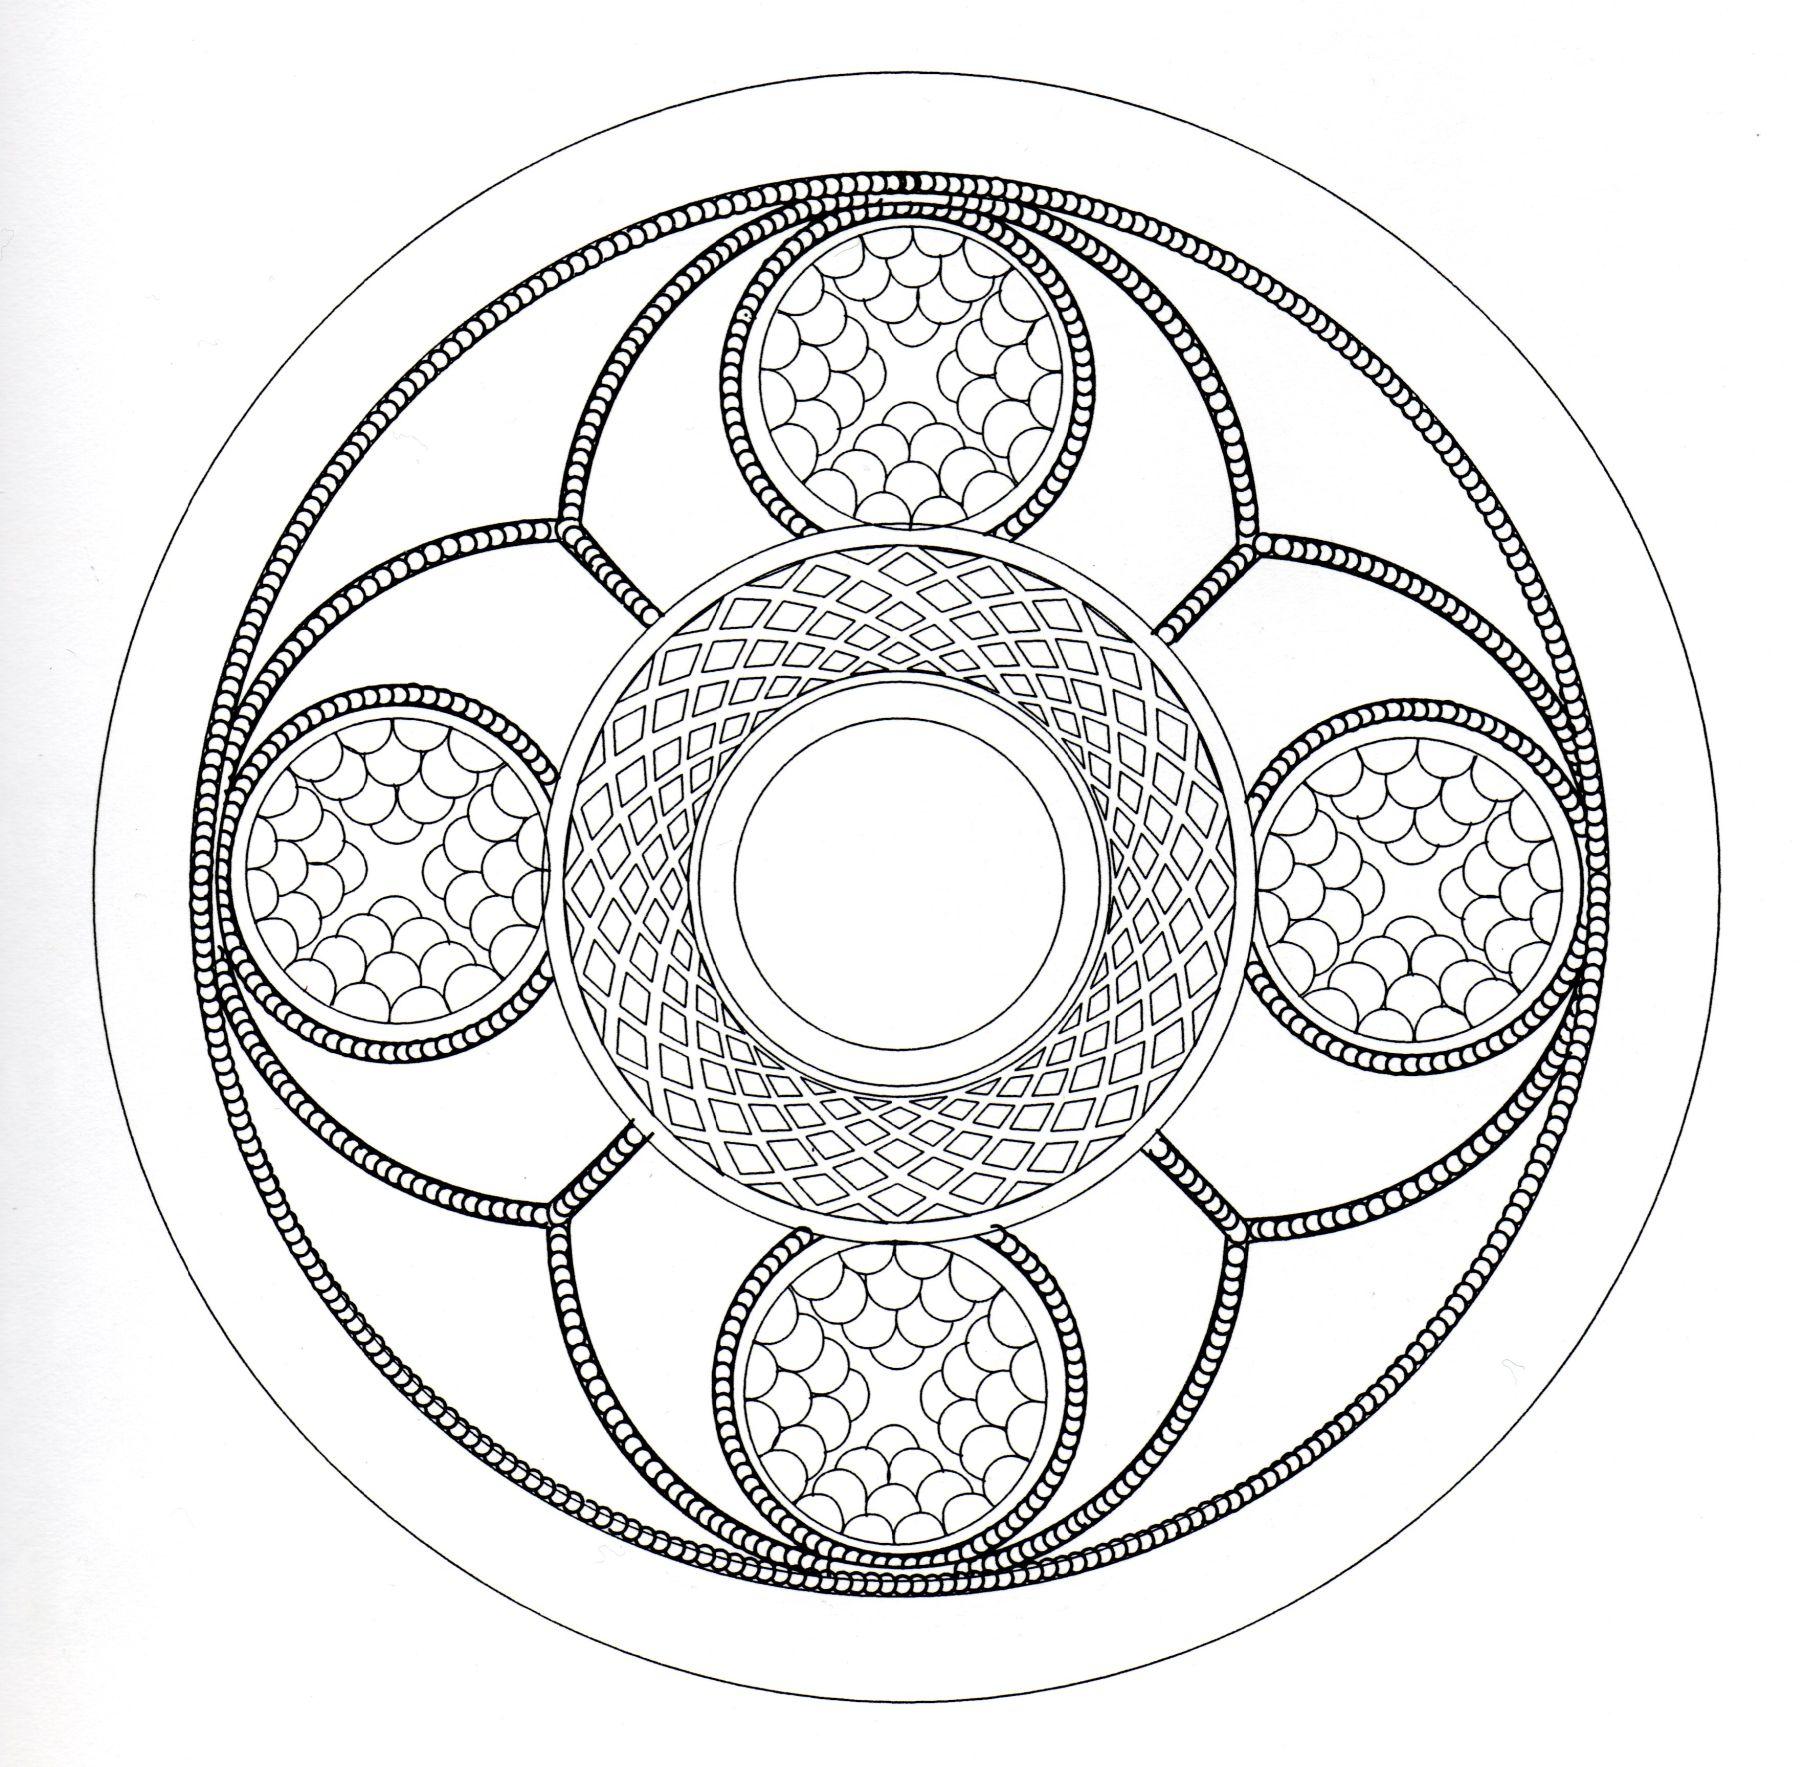 Viele kleine Details und ziemlich kleine Bereiche, für ein komplexes keltisches Mandala, das am Ende sehr originell und harmonisch wirkt.